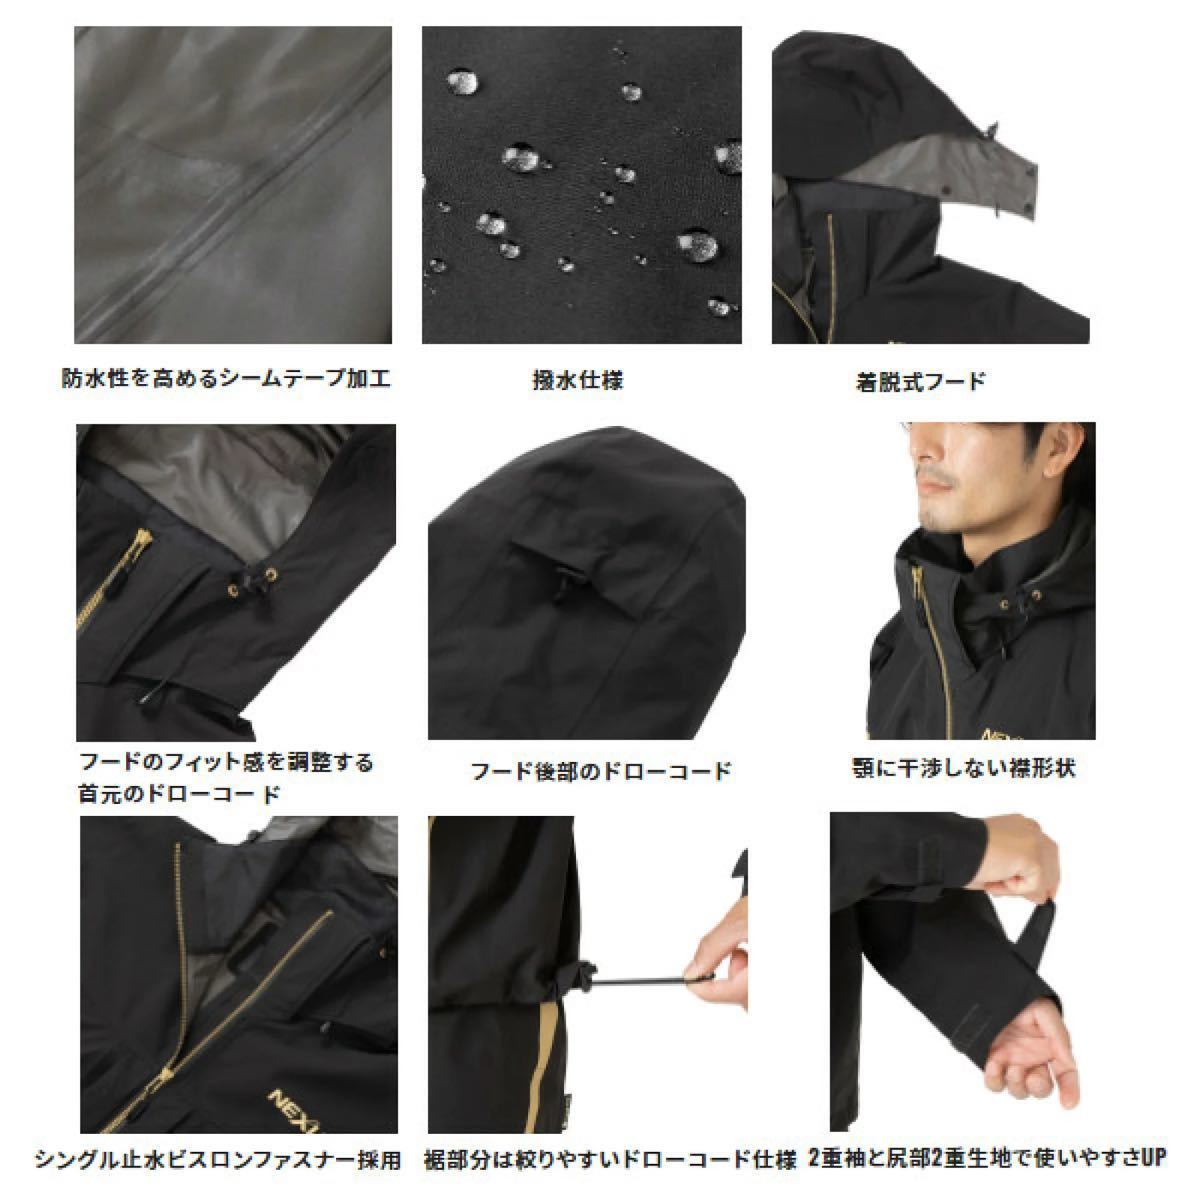  Shimano RA-101V черный XL размер розничная цена 60000 иен Nexus Gore-Tex непромокаемый костюм EX